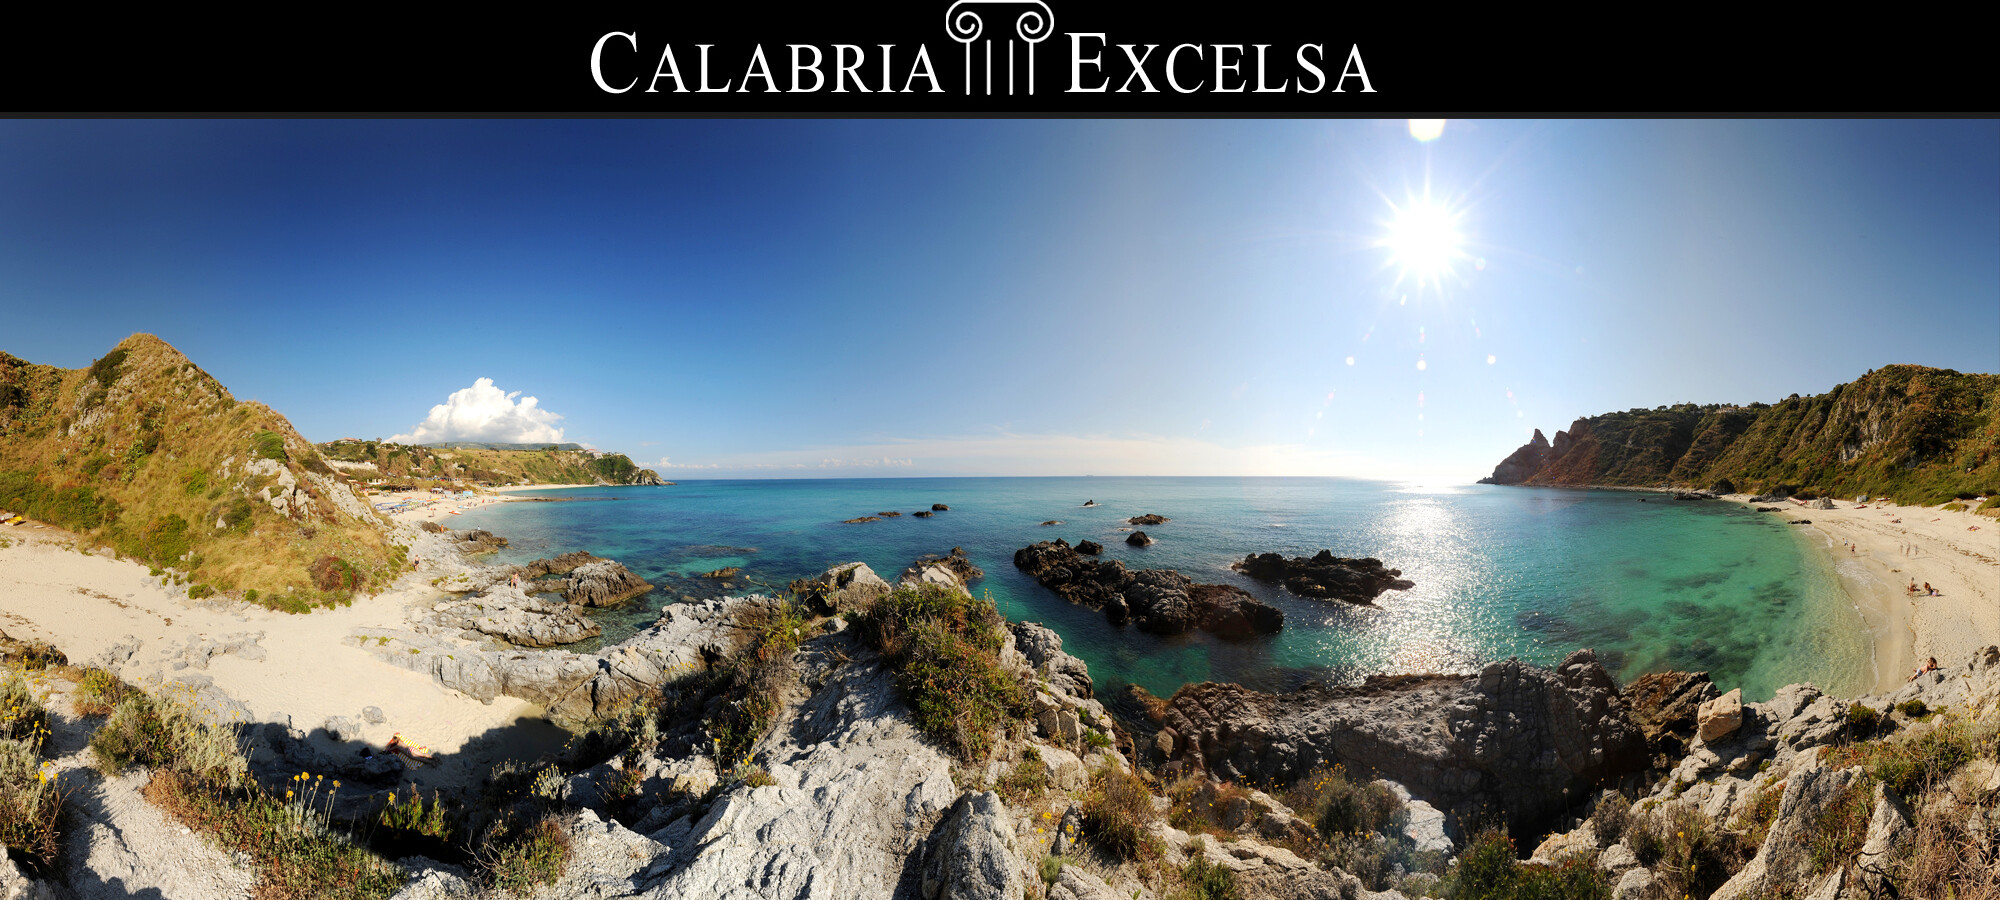 Calabria Excelsa